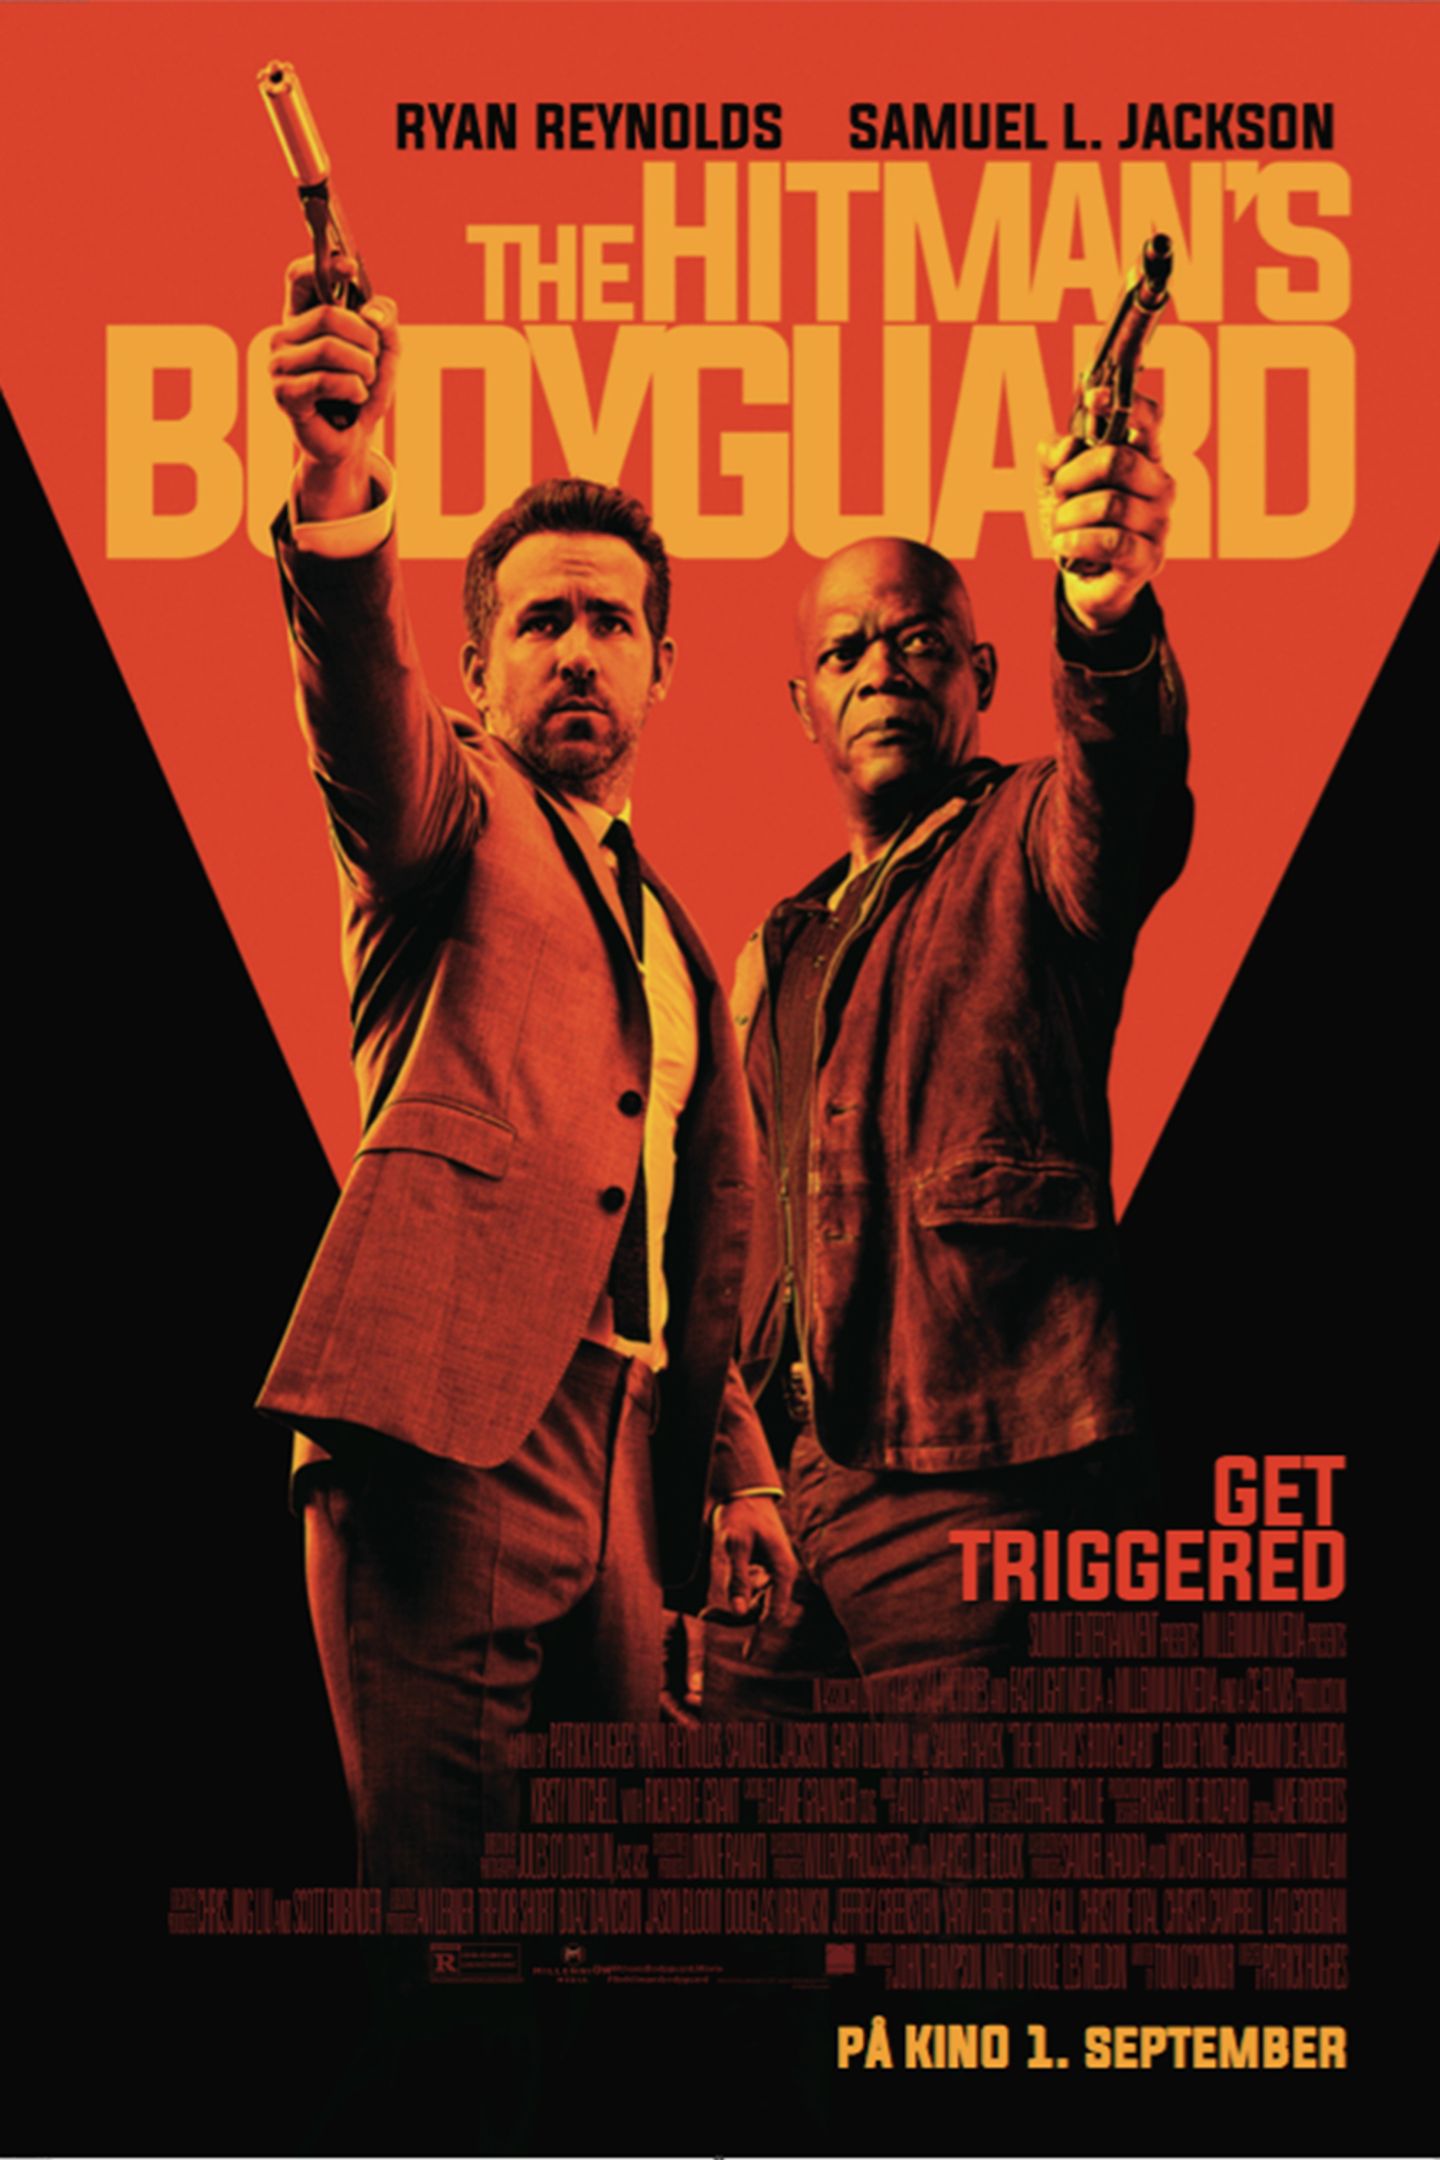 Plakat for 'The Hitman's Bodyguard'